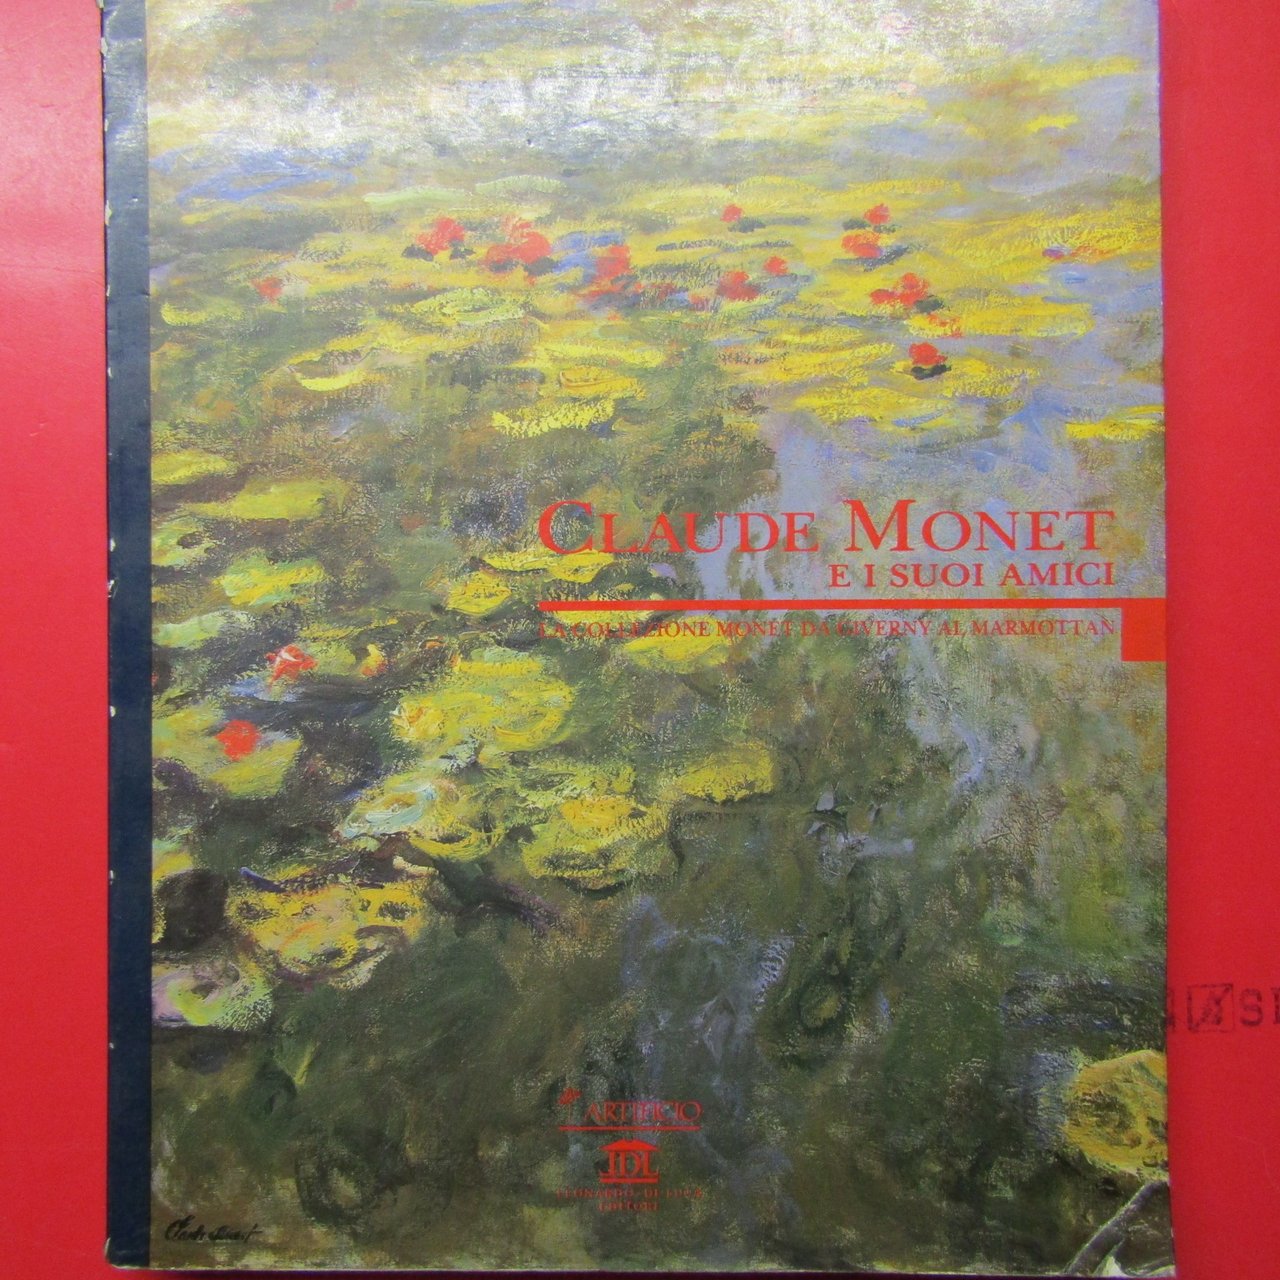 Claude Monet e i suoi amici